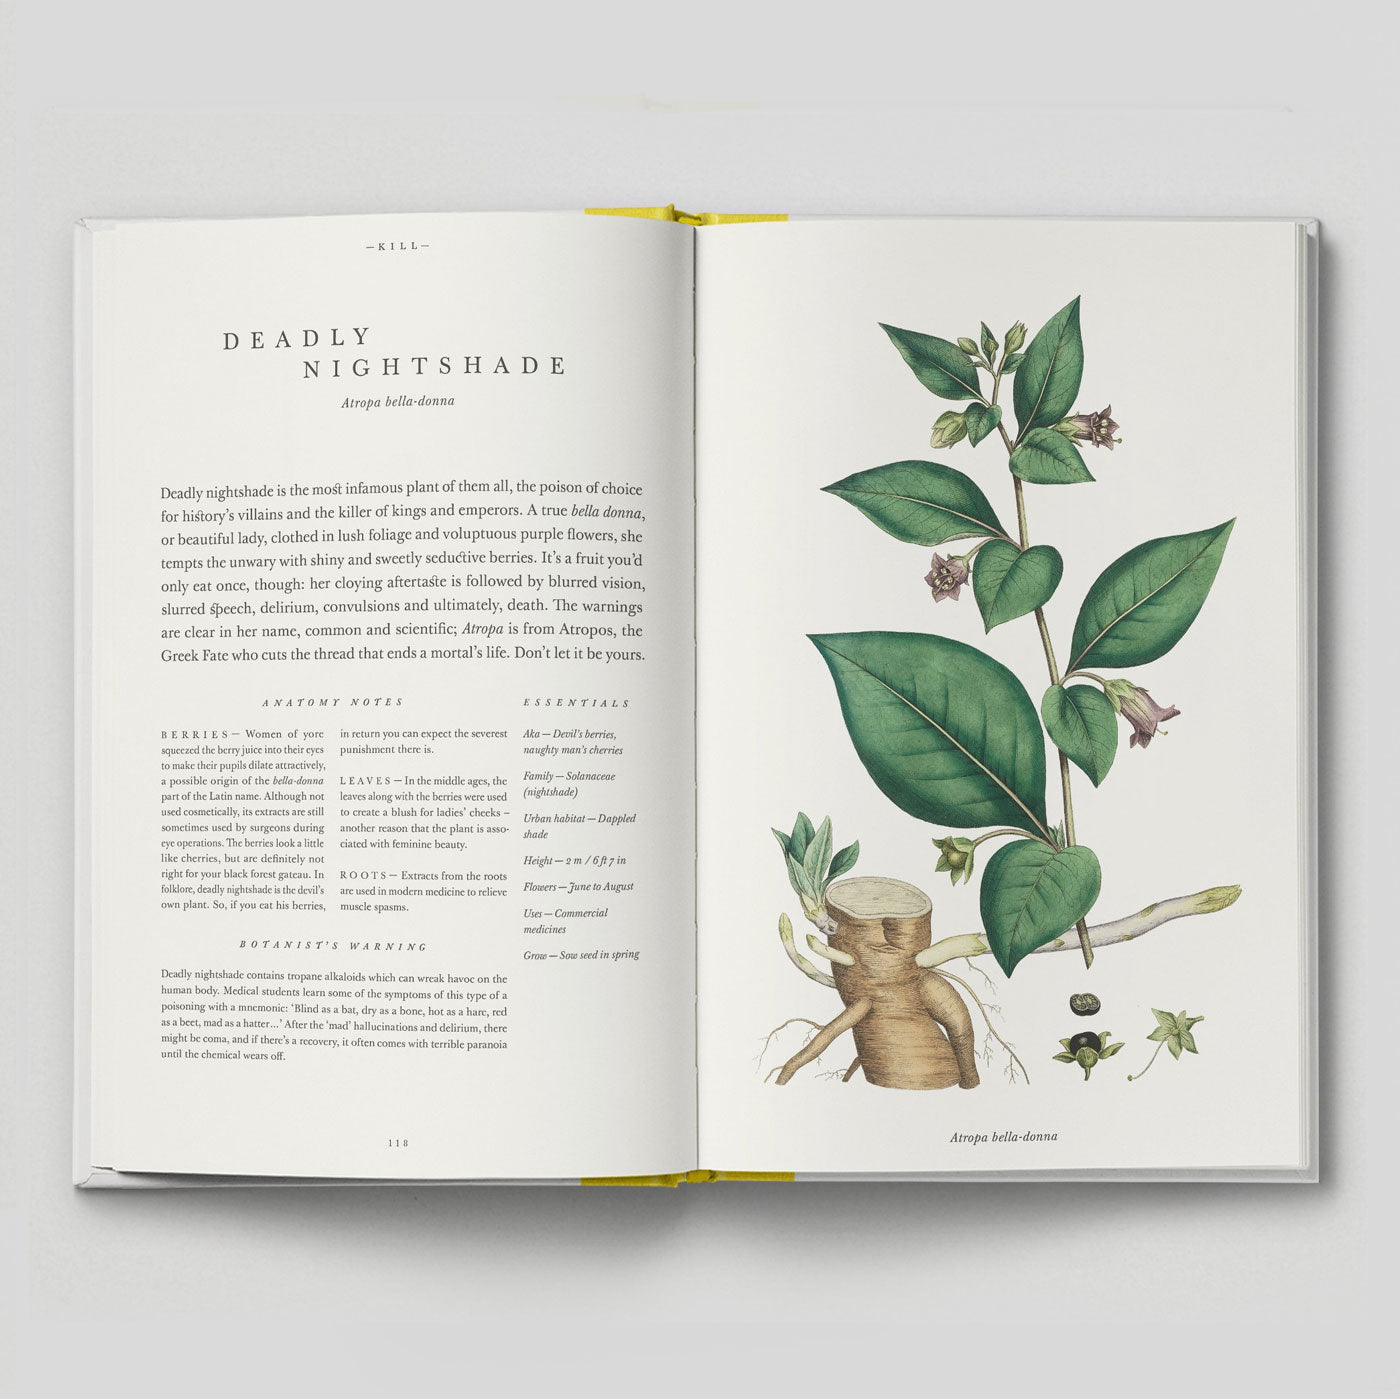 The Botanical City | Helena Dove & Harry Ades | Hoxton Mini Press | Colours May Vary 